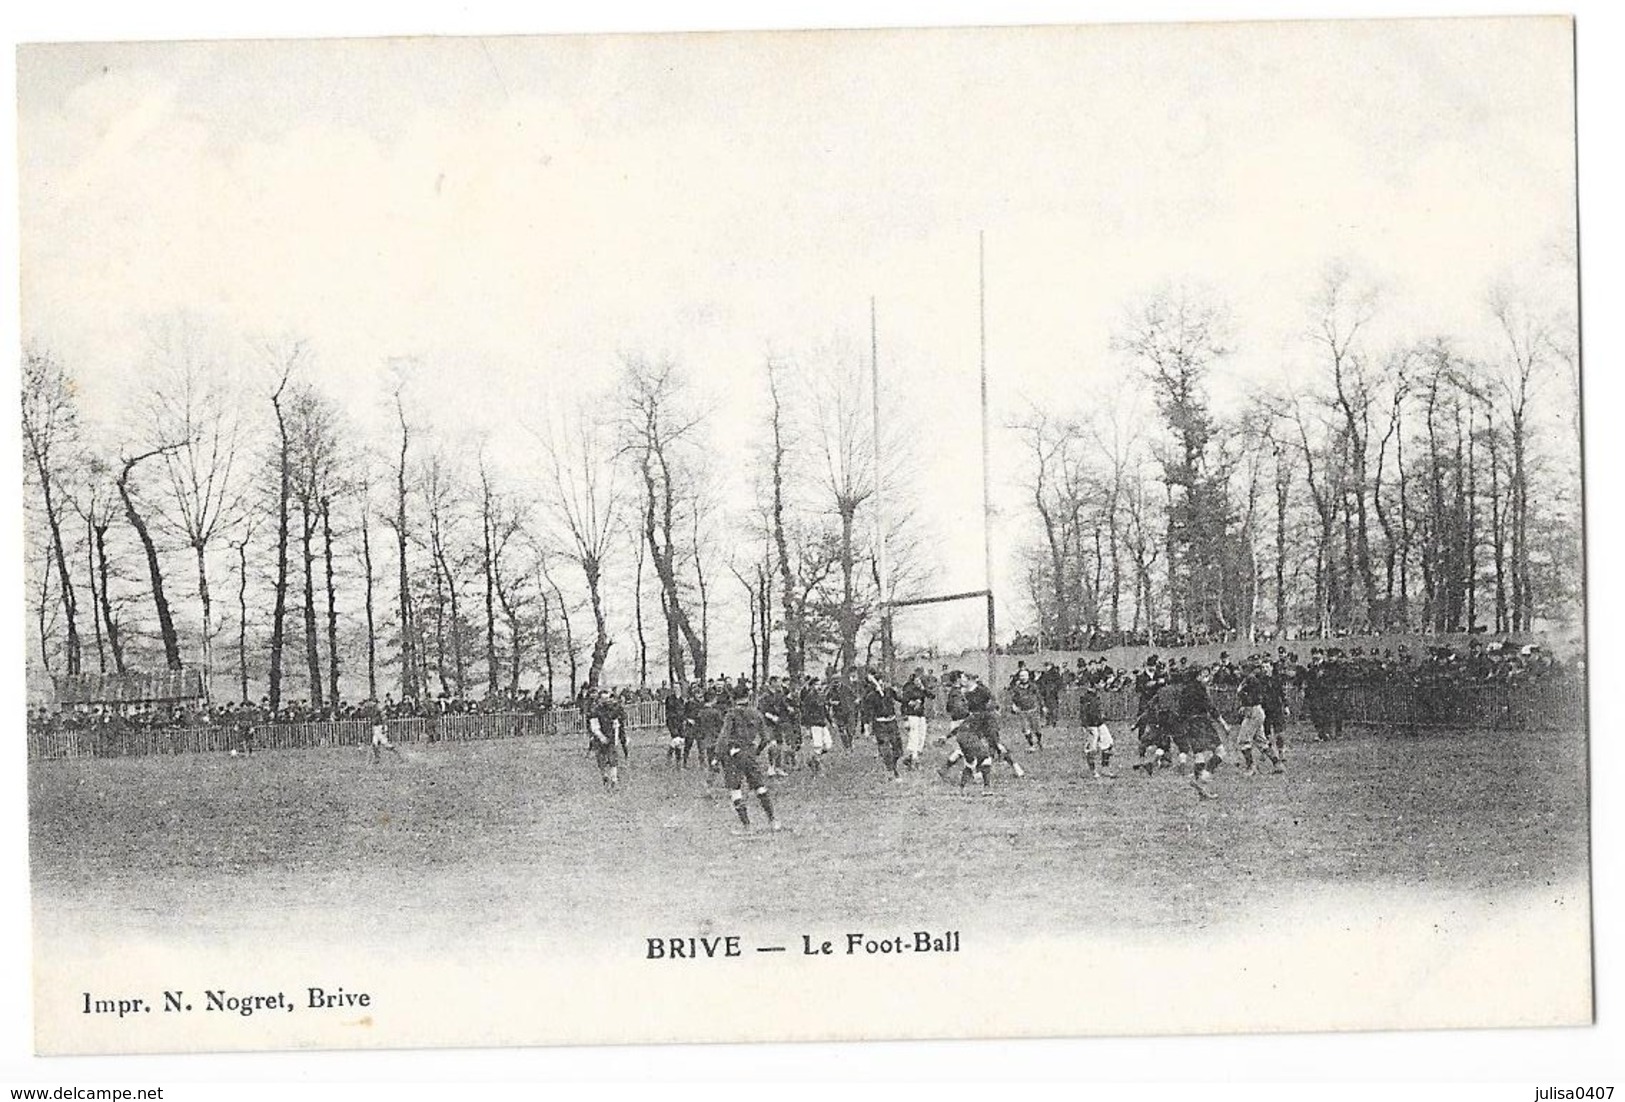 BRIVE (19) Stade Le Football Partie De Rugby - Brive La Gaillarde